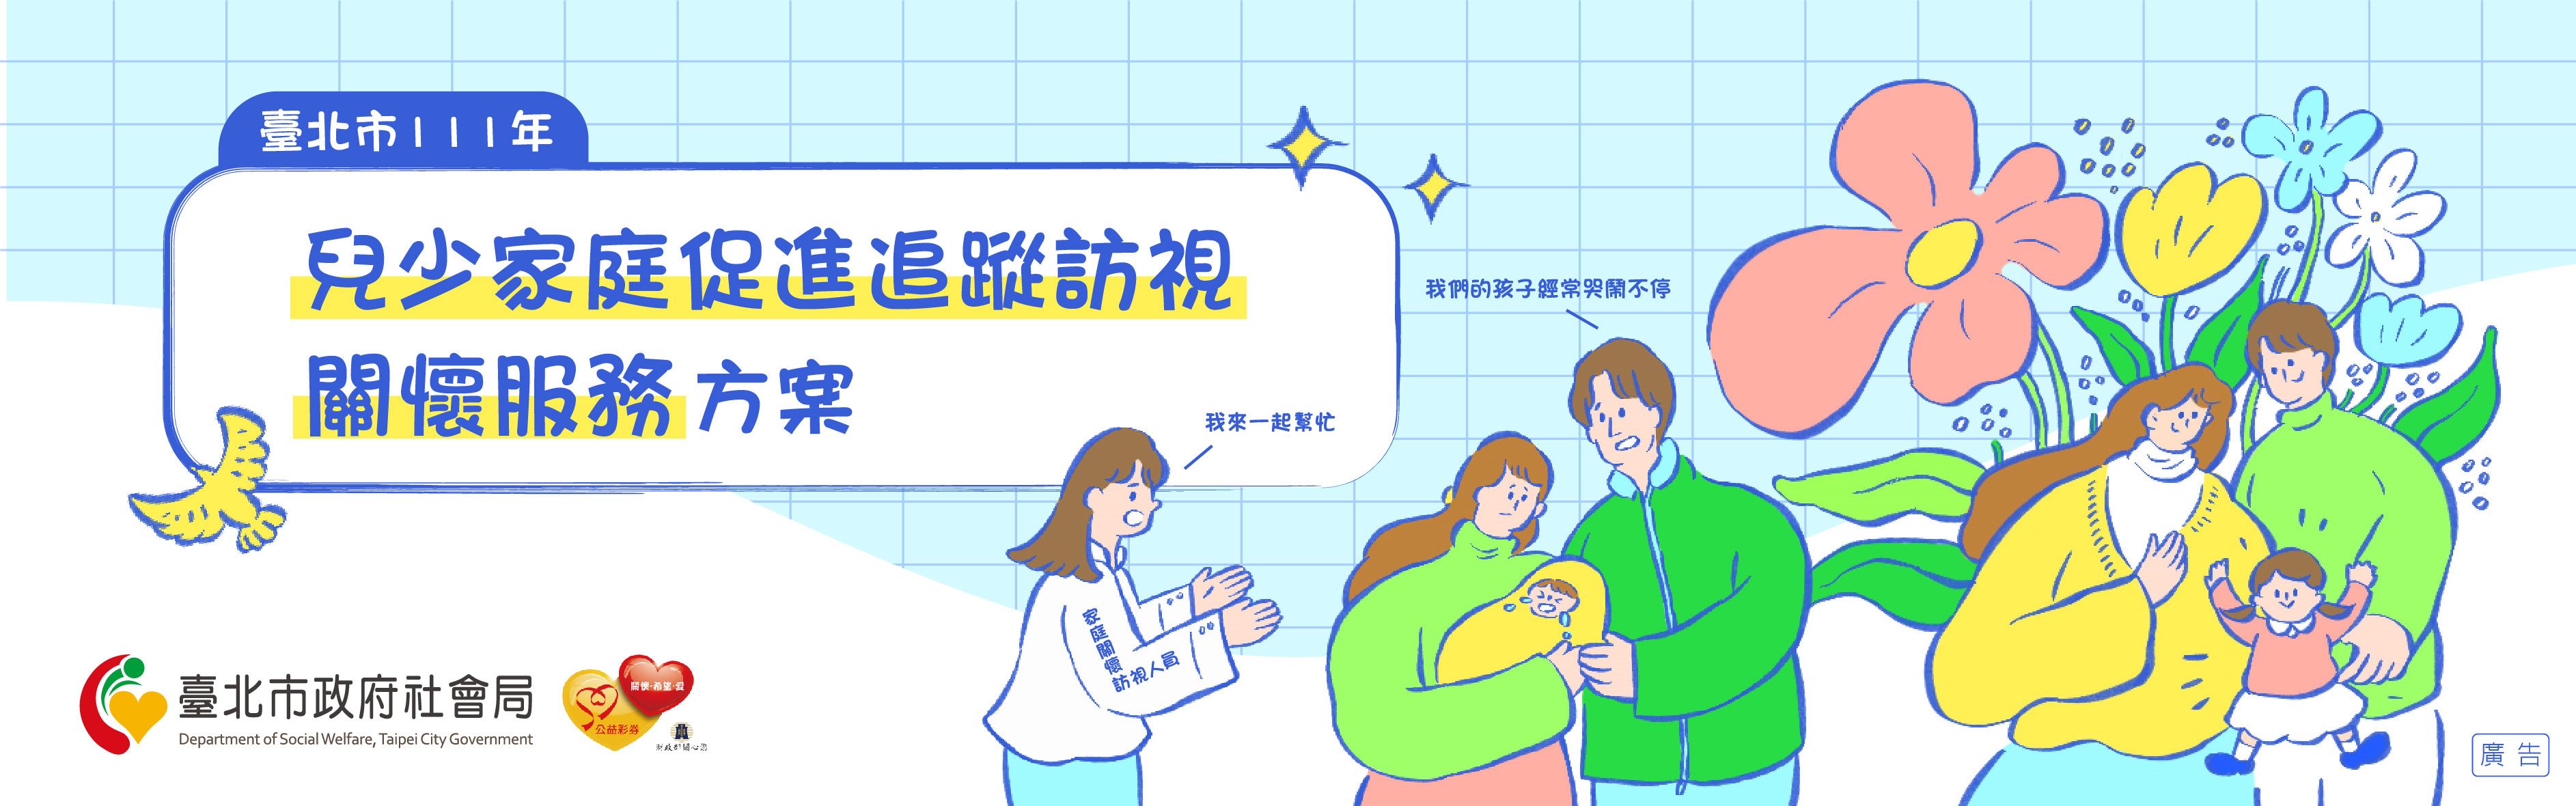 臺北市111年兒少家庭促進追蹤訪視及關懷服務方案